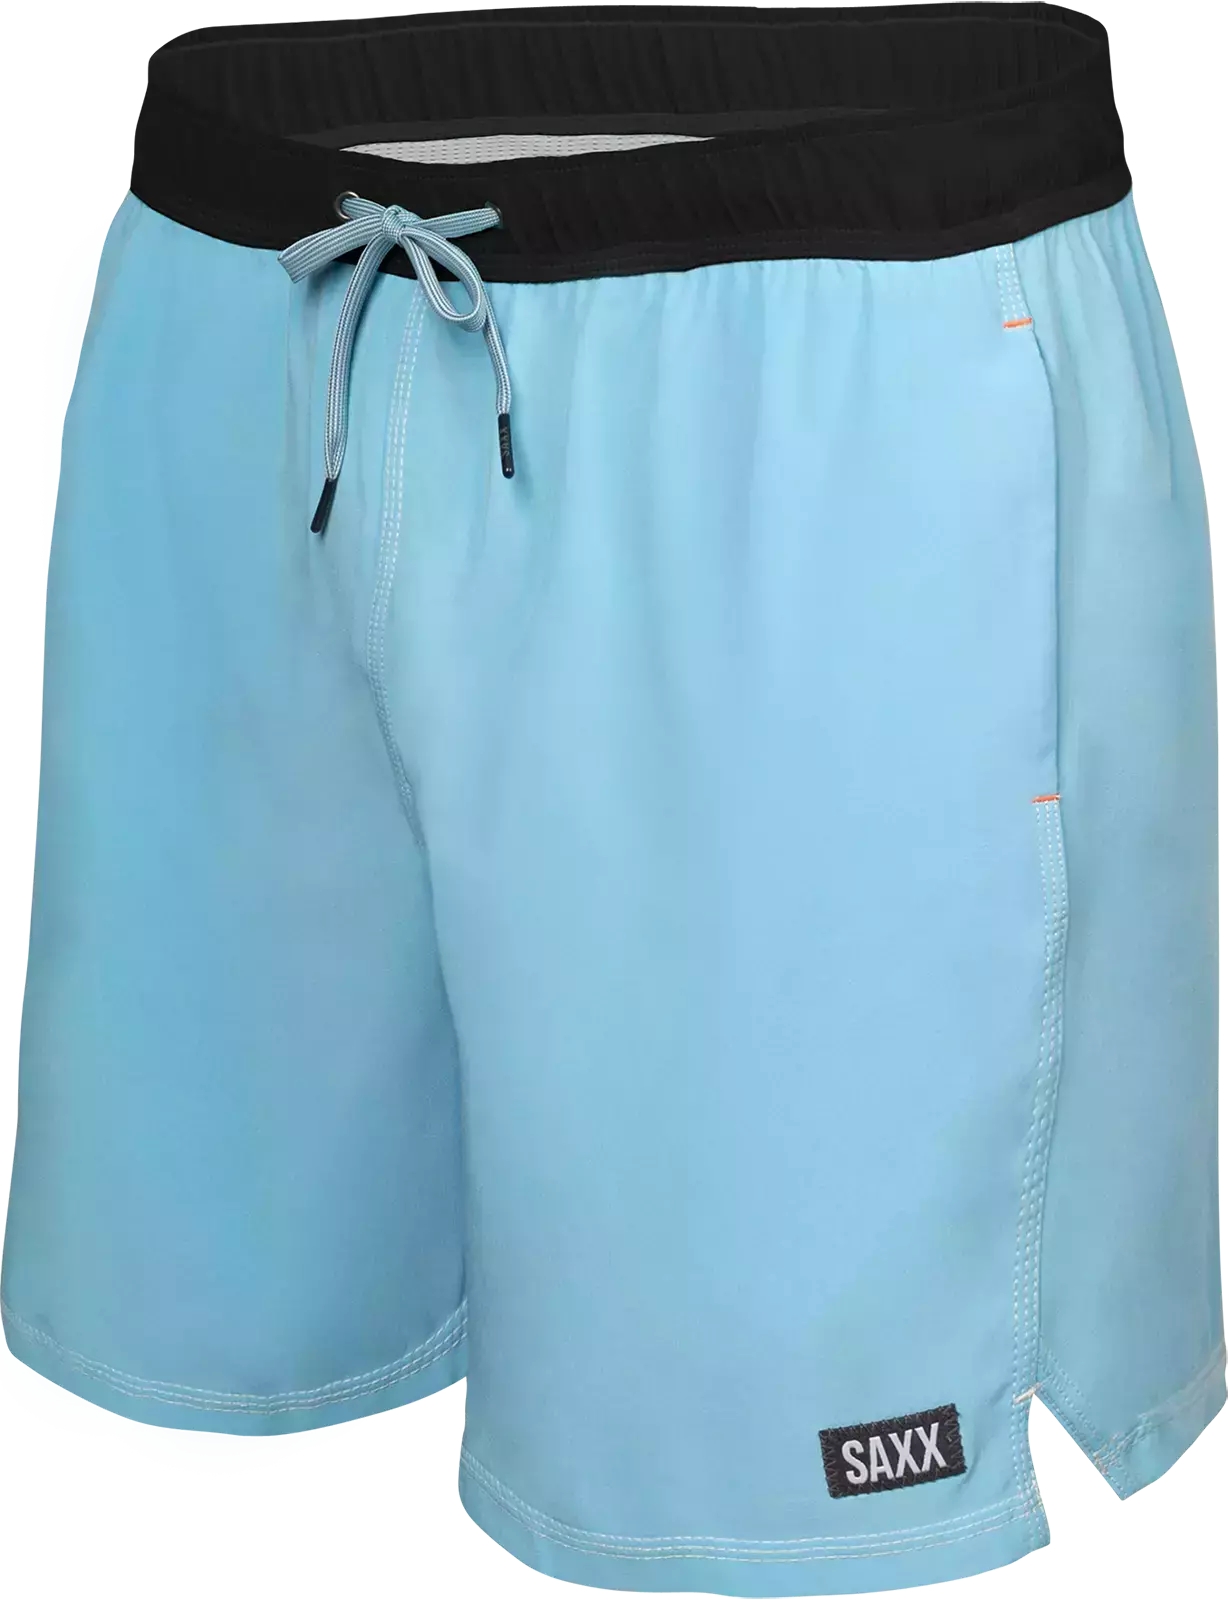 Image of Szorty kąpielowe męskie z kieszeniami 2w1 SAXX OH BUOY krótkie - niebieskie